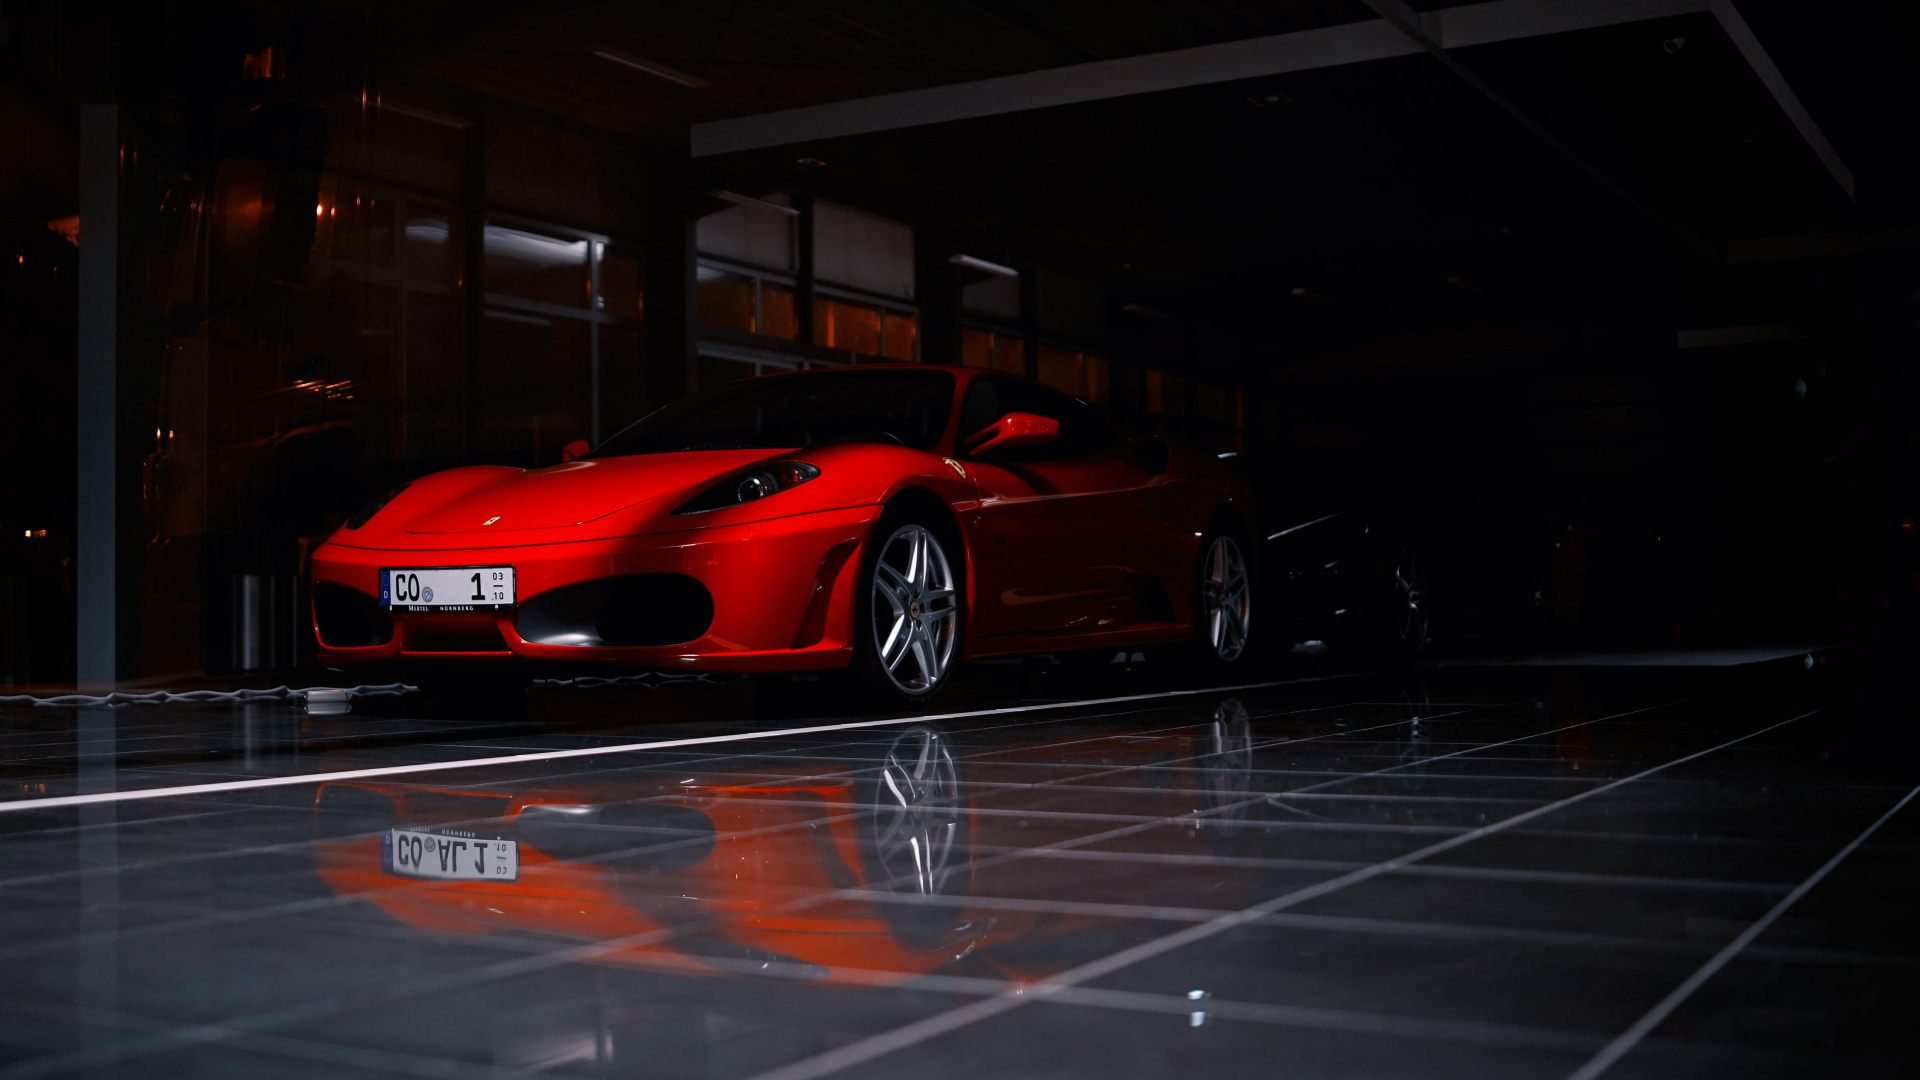 Roter Ferrari 458 Italia Auf Parkplatz Geparkt. Wallpaper in 1920x1080 Resolution